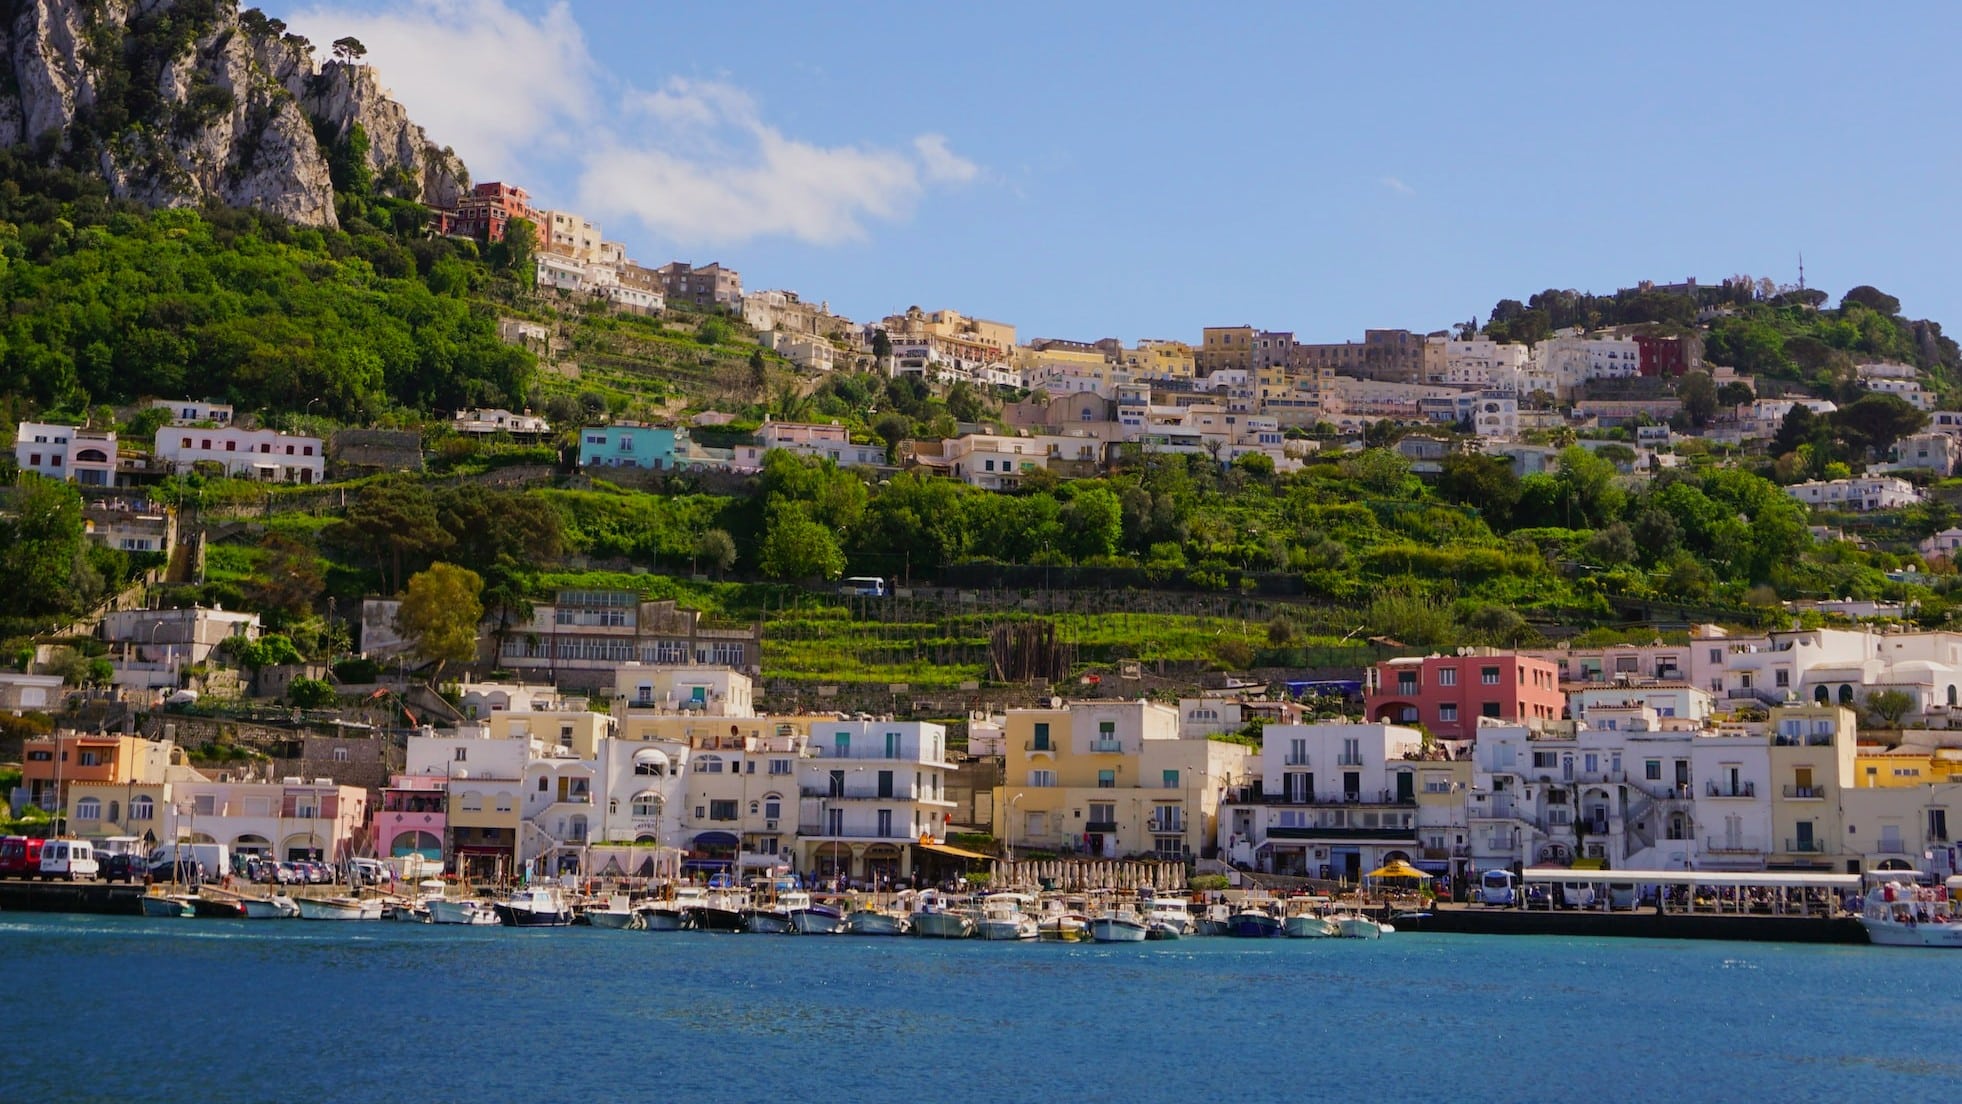 Marina Grande se encuentra en la parte norte de Capri y es el puerto más importante de la isla. Hay muchas pintorescas tiendas de recuerdos y restaurantes dirigidos a turistas, así como hoteles con vista al mar. Marina Grande también tiene una playa con la zona de baño más grande de la isla.